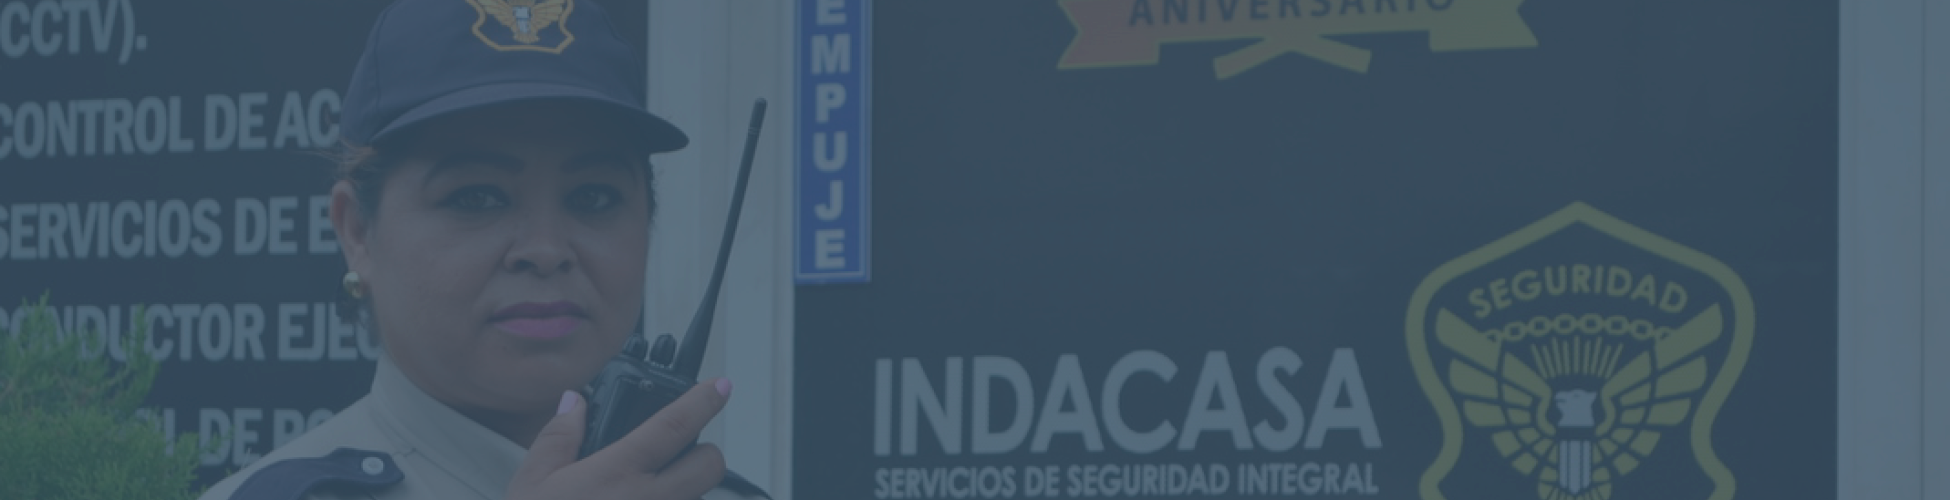 Banner de Top, Nosotros, INDACASA